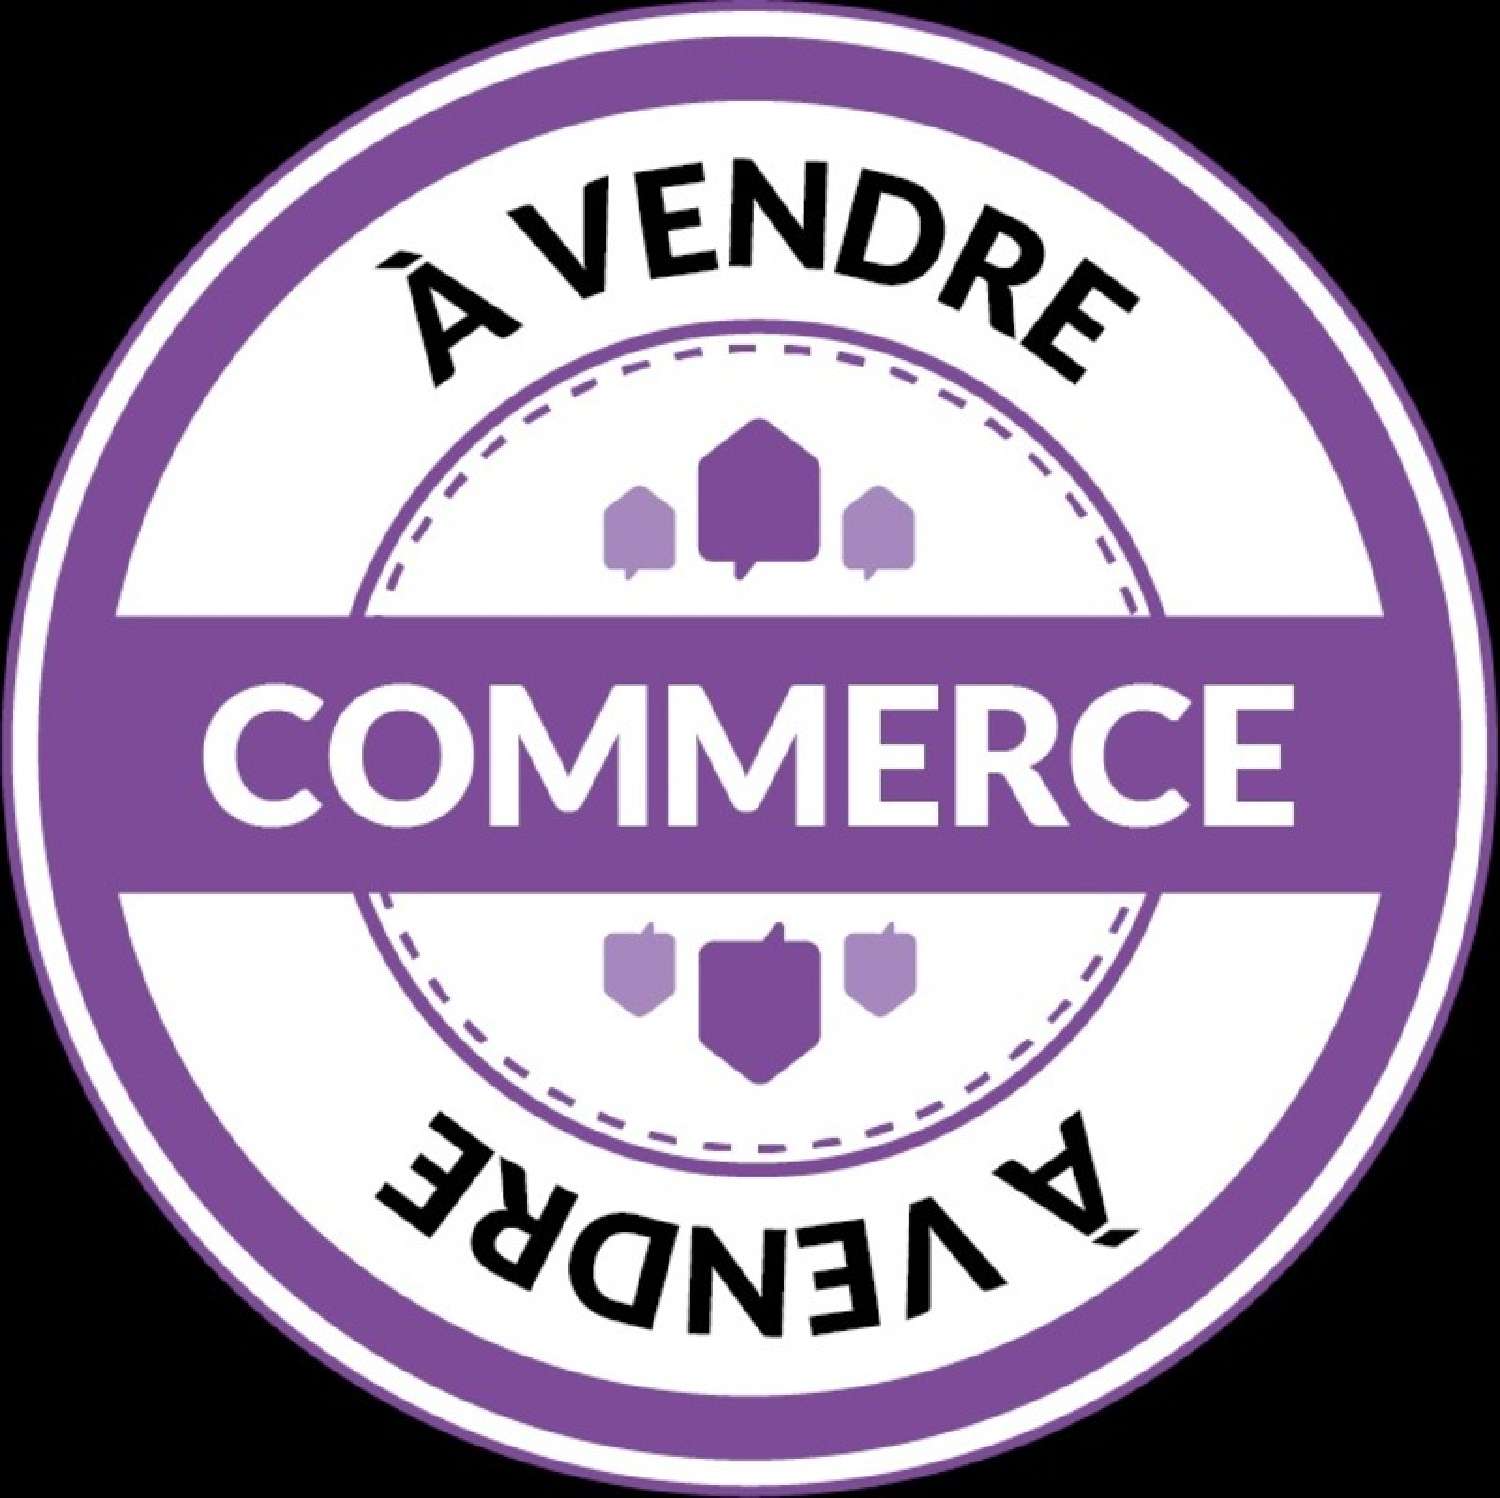 Mayenne Mayenne commerce foto 6504754